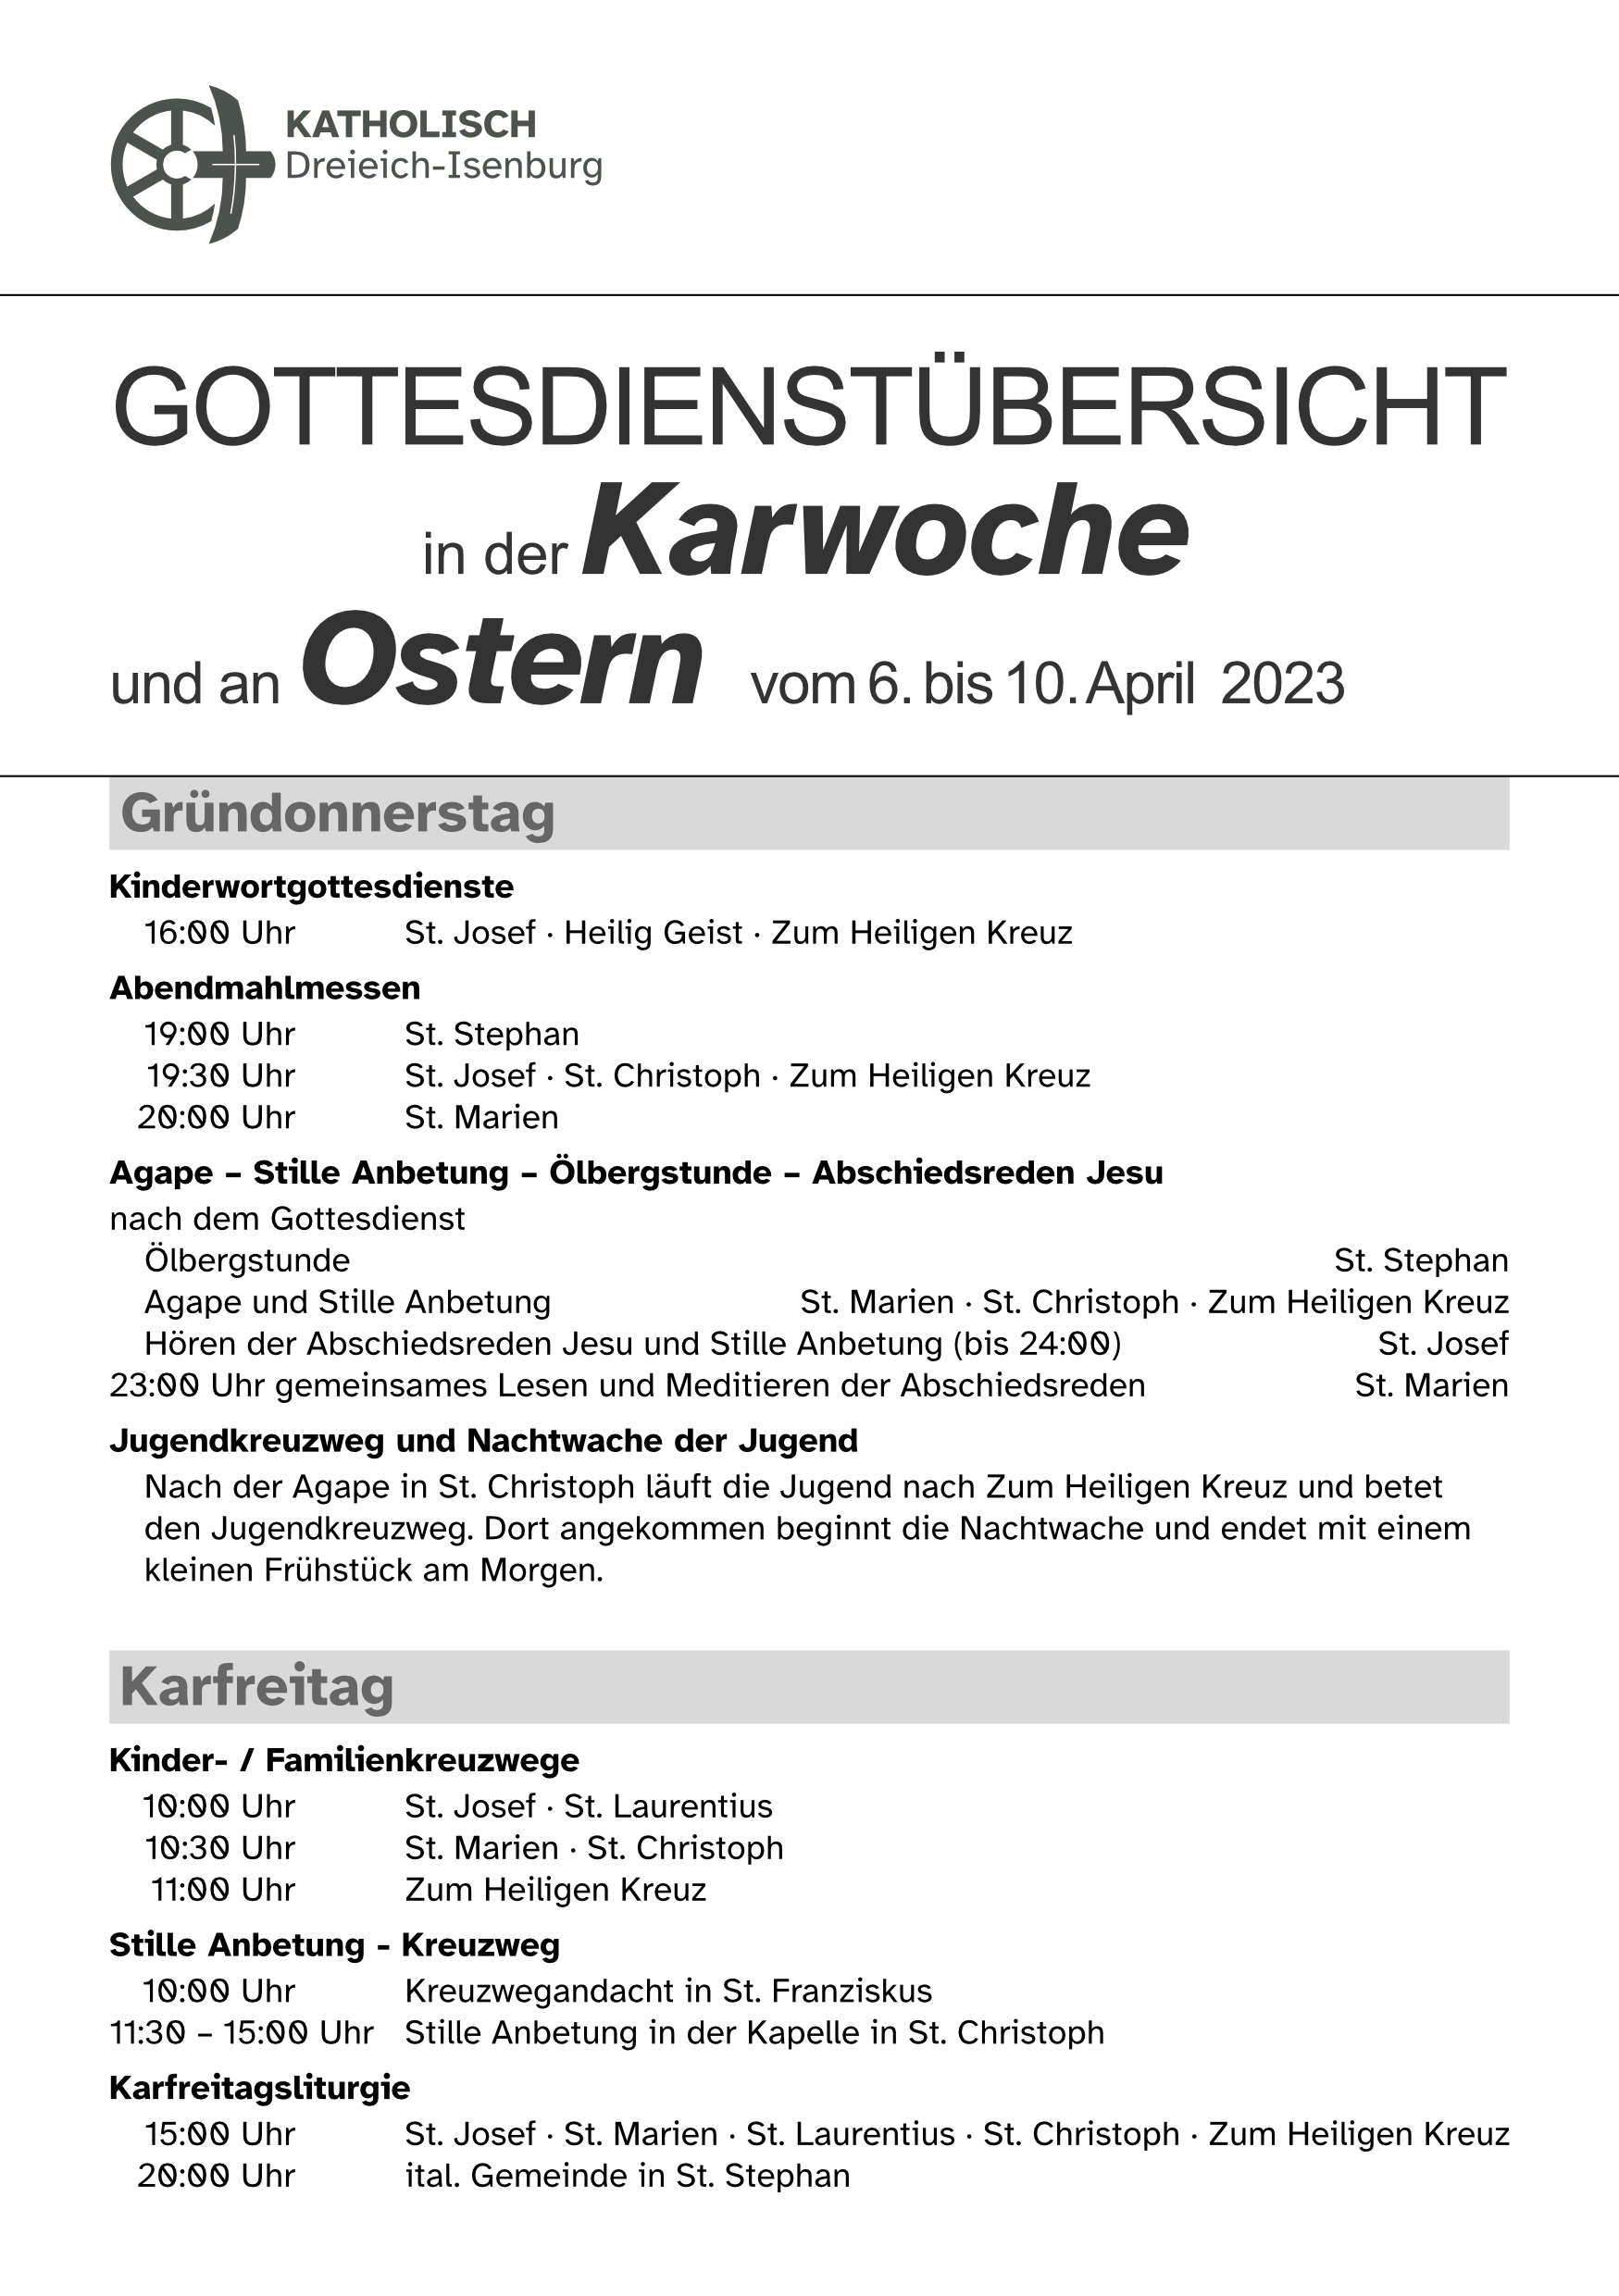 Übersicht Karwoche und Ostern 2023 I (c) Katholisch Dreieich-Isenburg